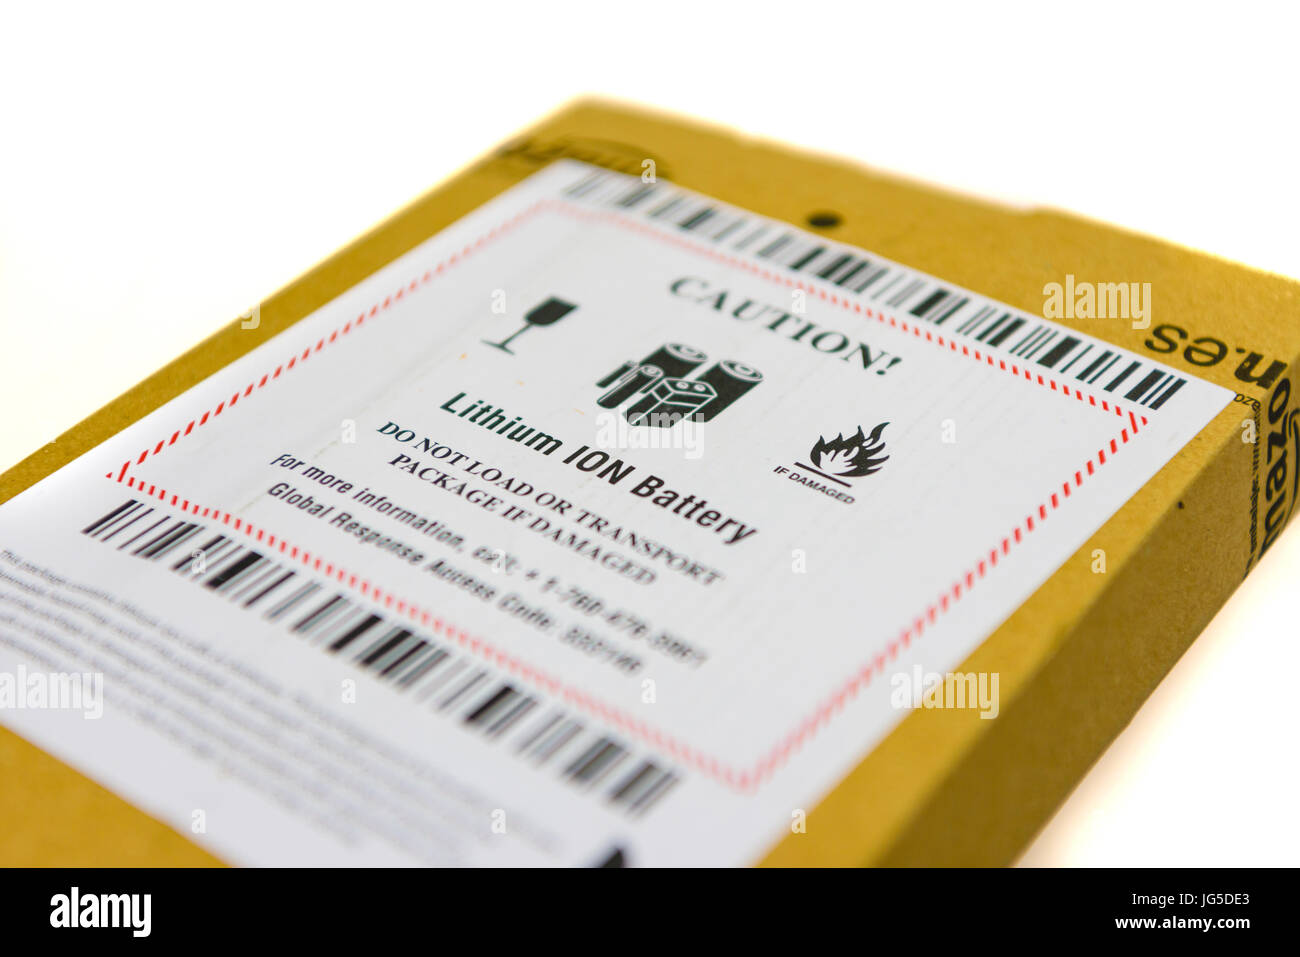 Paket von Amazon mit einem Aufkleber Warnung, dass das Paket einen Lithium-Ionen-Akku enthält, und nicht zu transportieren, wenn das Paket beschädigt ist. Stockfoto